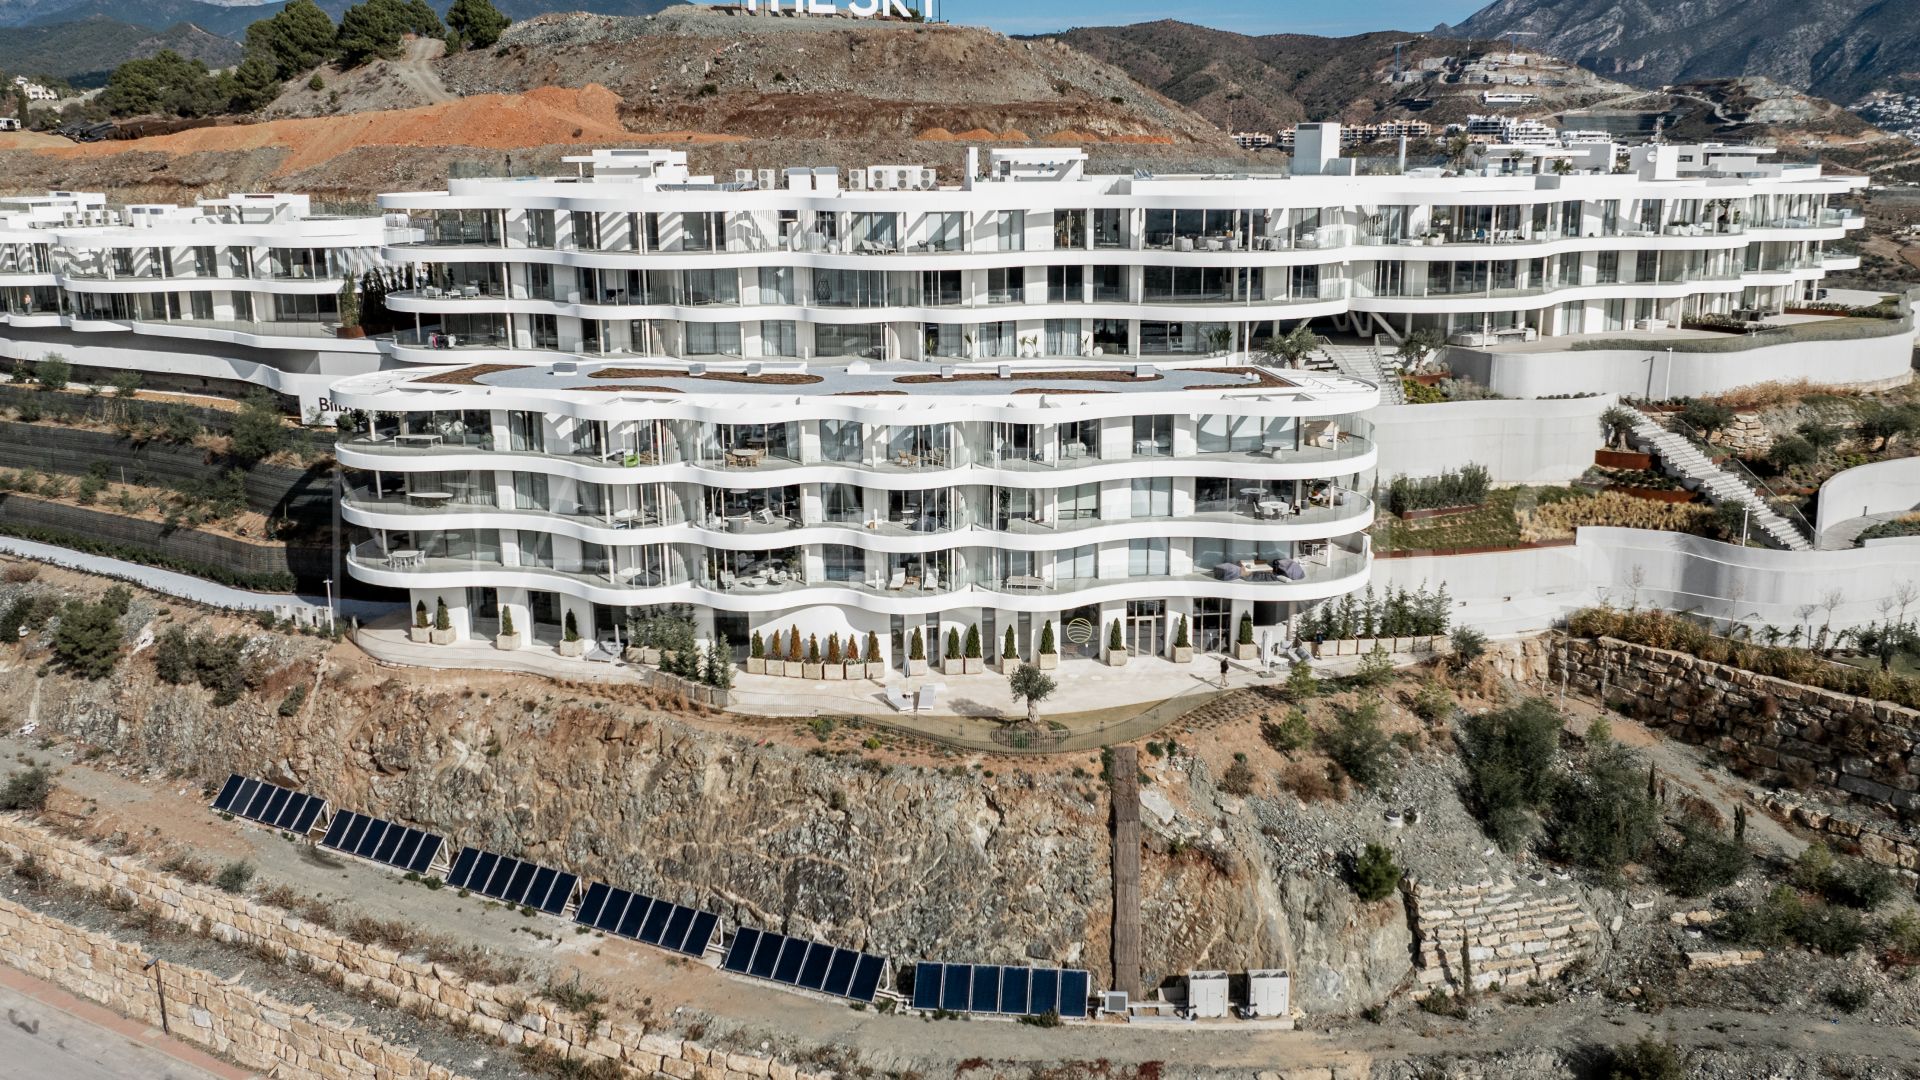 The View Marbella, apartamento a la venta de 3 bedrooms